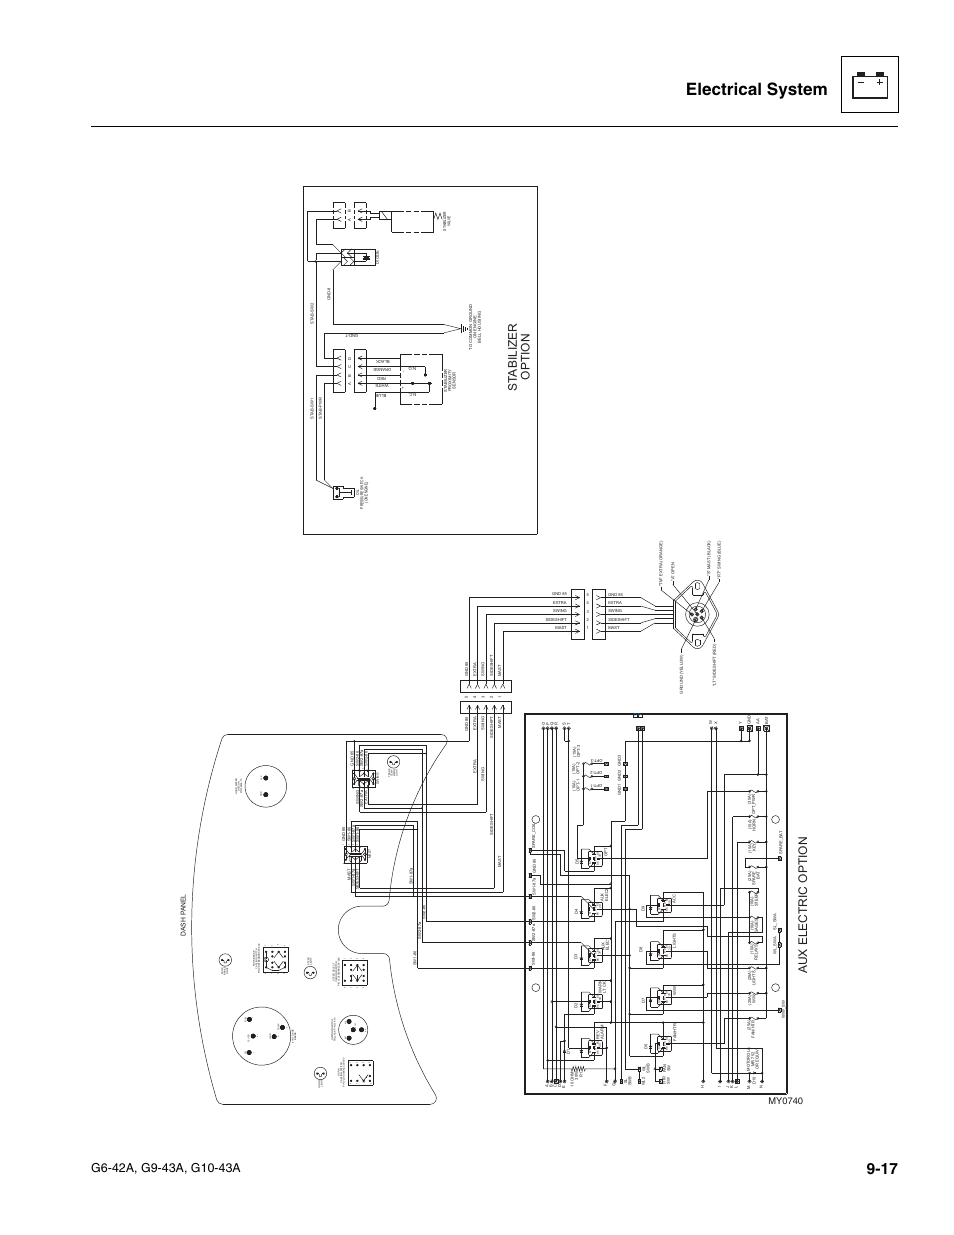 Electrical system, St abilizer option, Aux electric option | JLG G6-42A ...